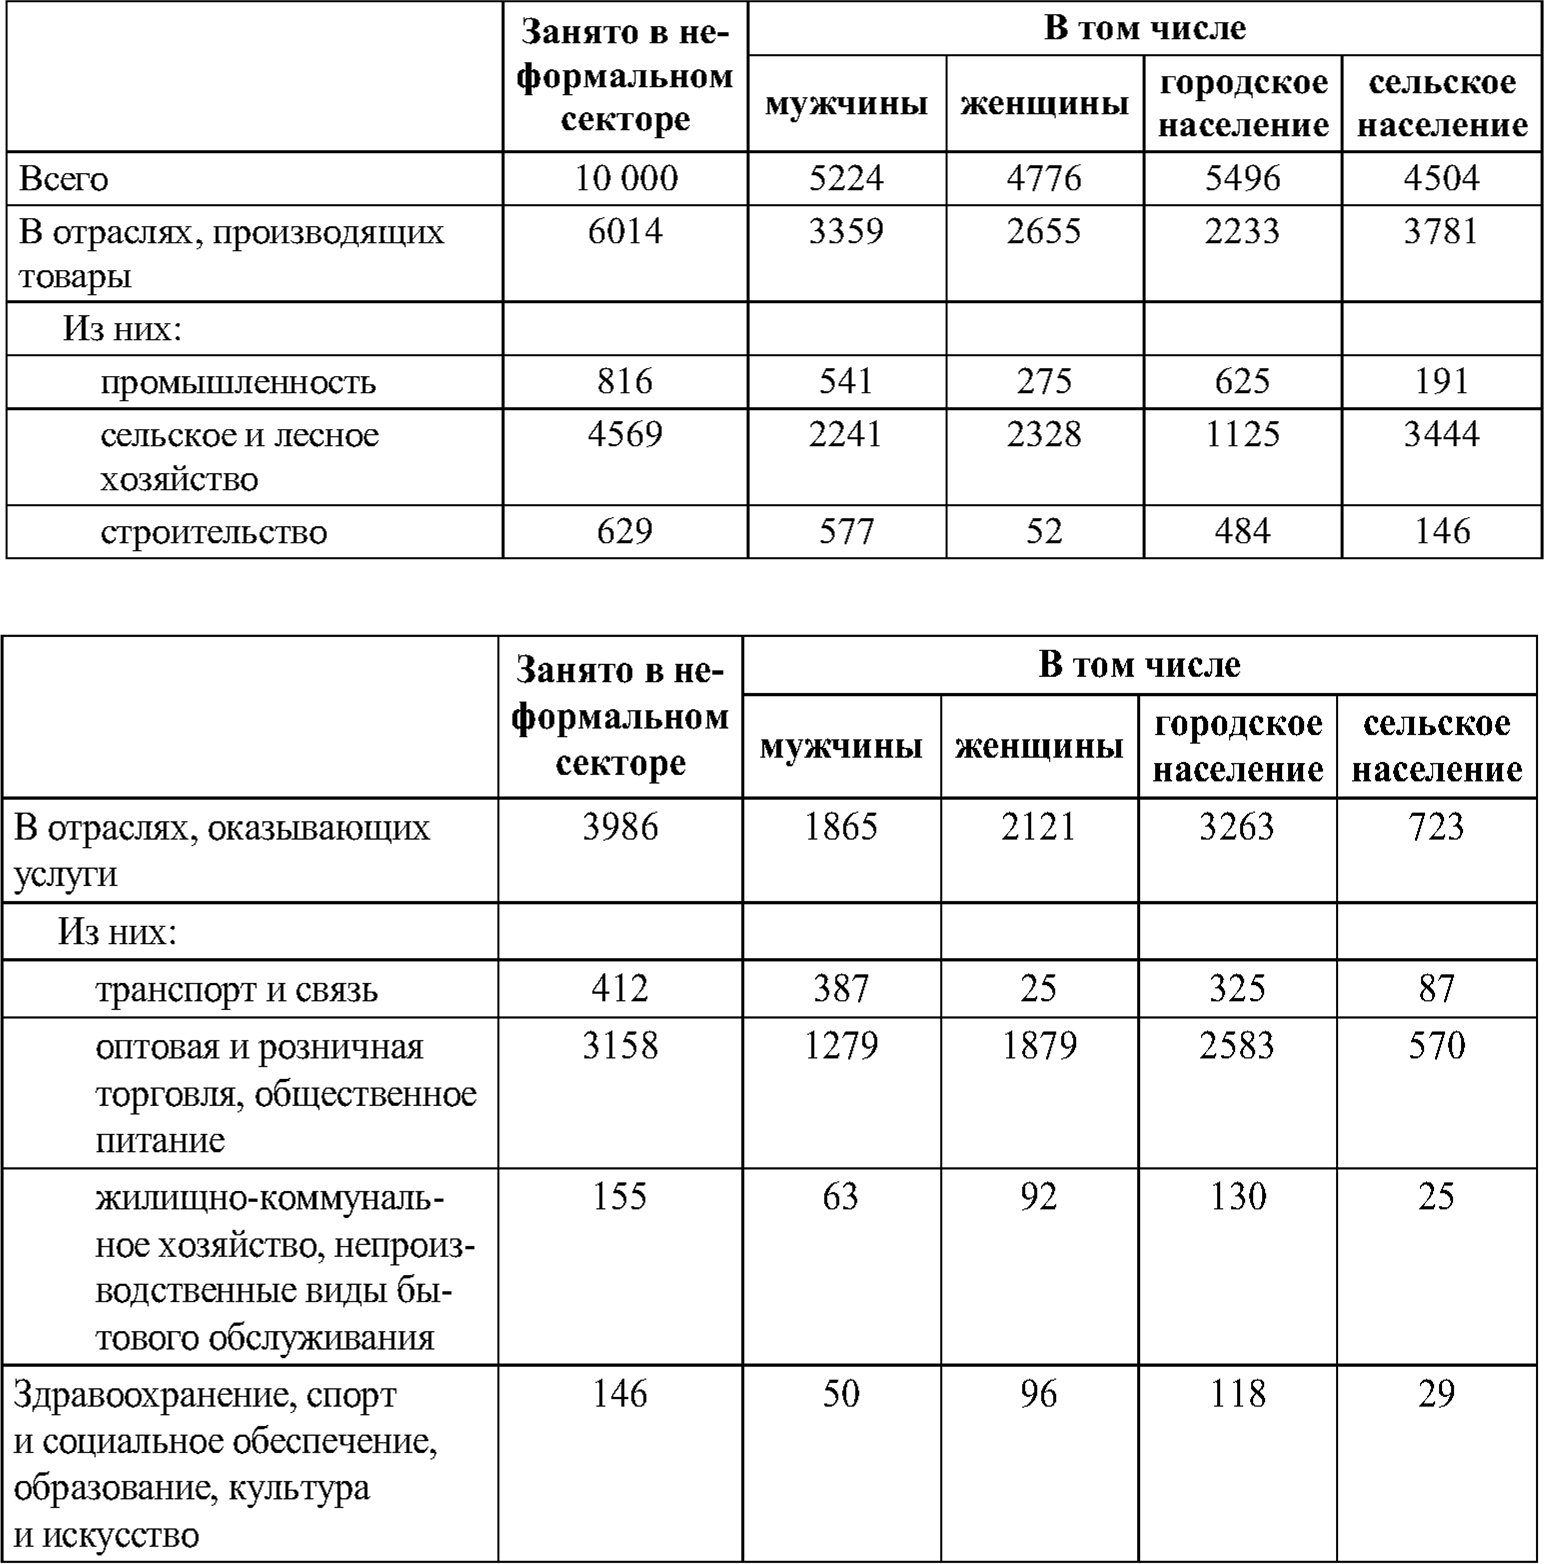 Занятые в неформальном секторе по полу, месту проживания и отраслям экономики в Российской Федерации в августе 2001 г., тыс.чел